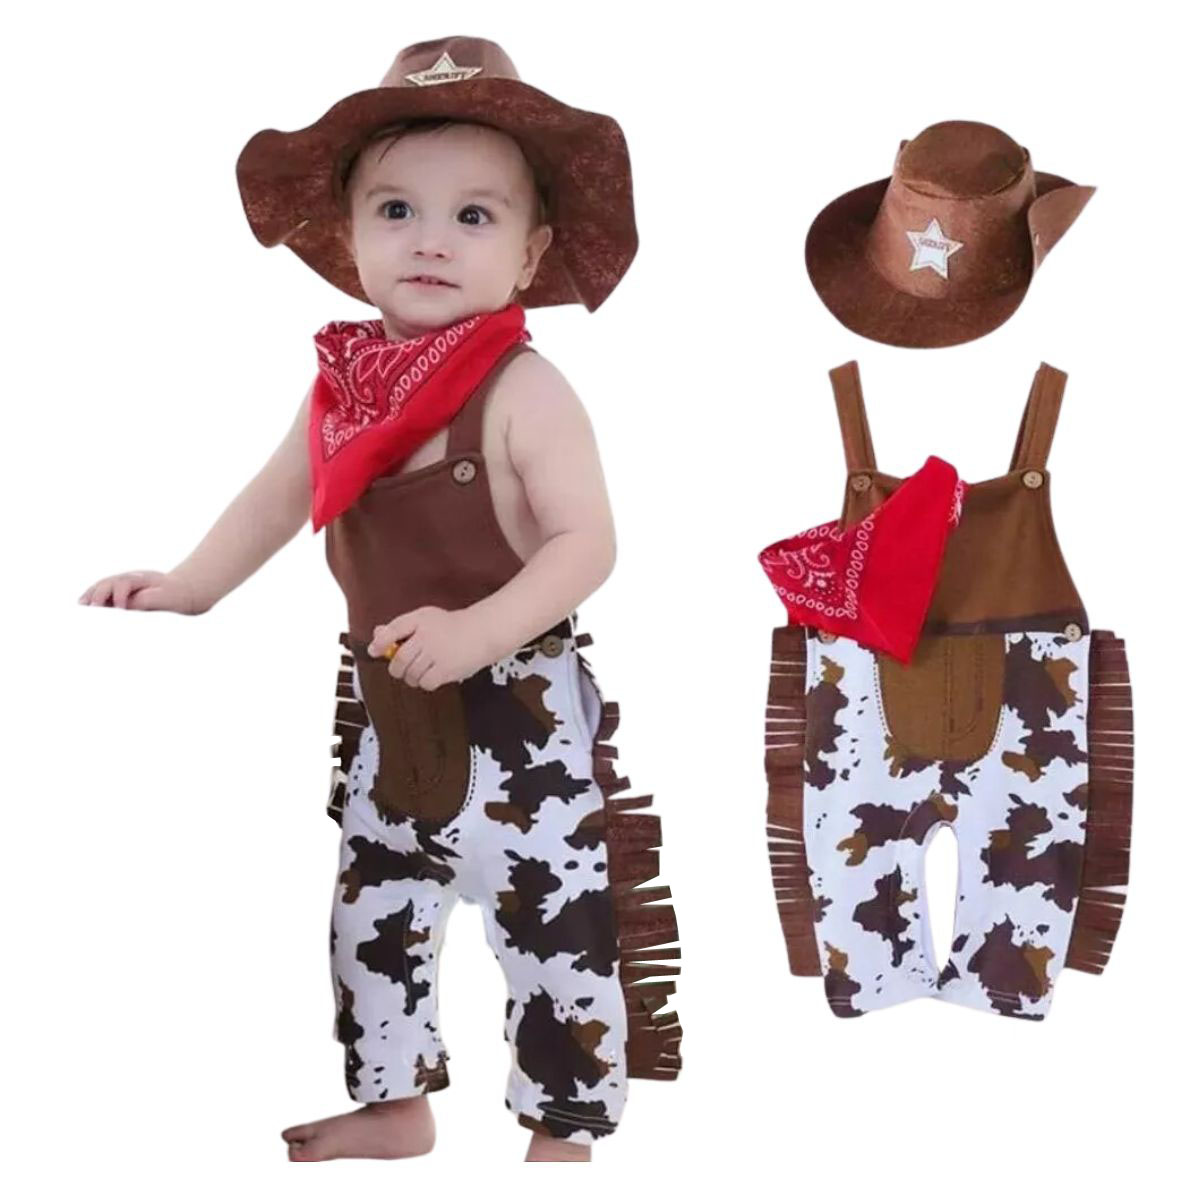 Fantasia Bebê Cowboy Country Vaqueiro 3 Peças - Cia Bebê